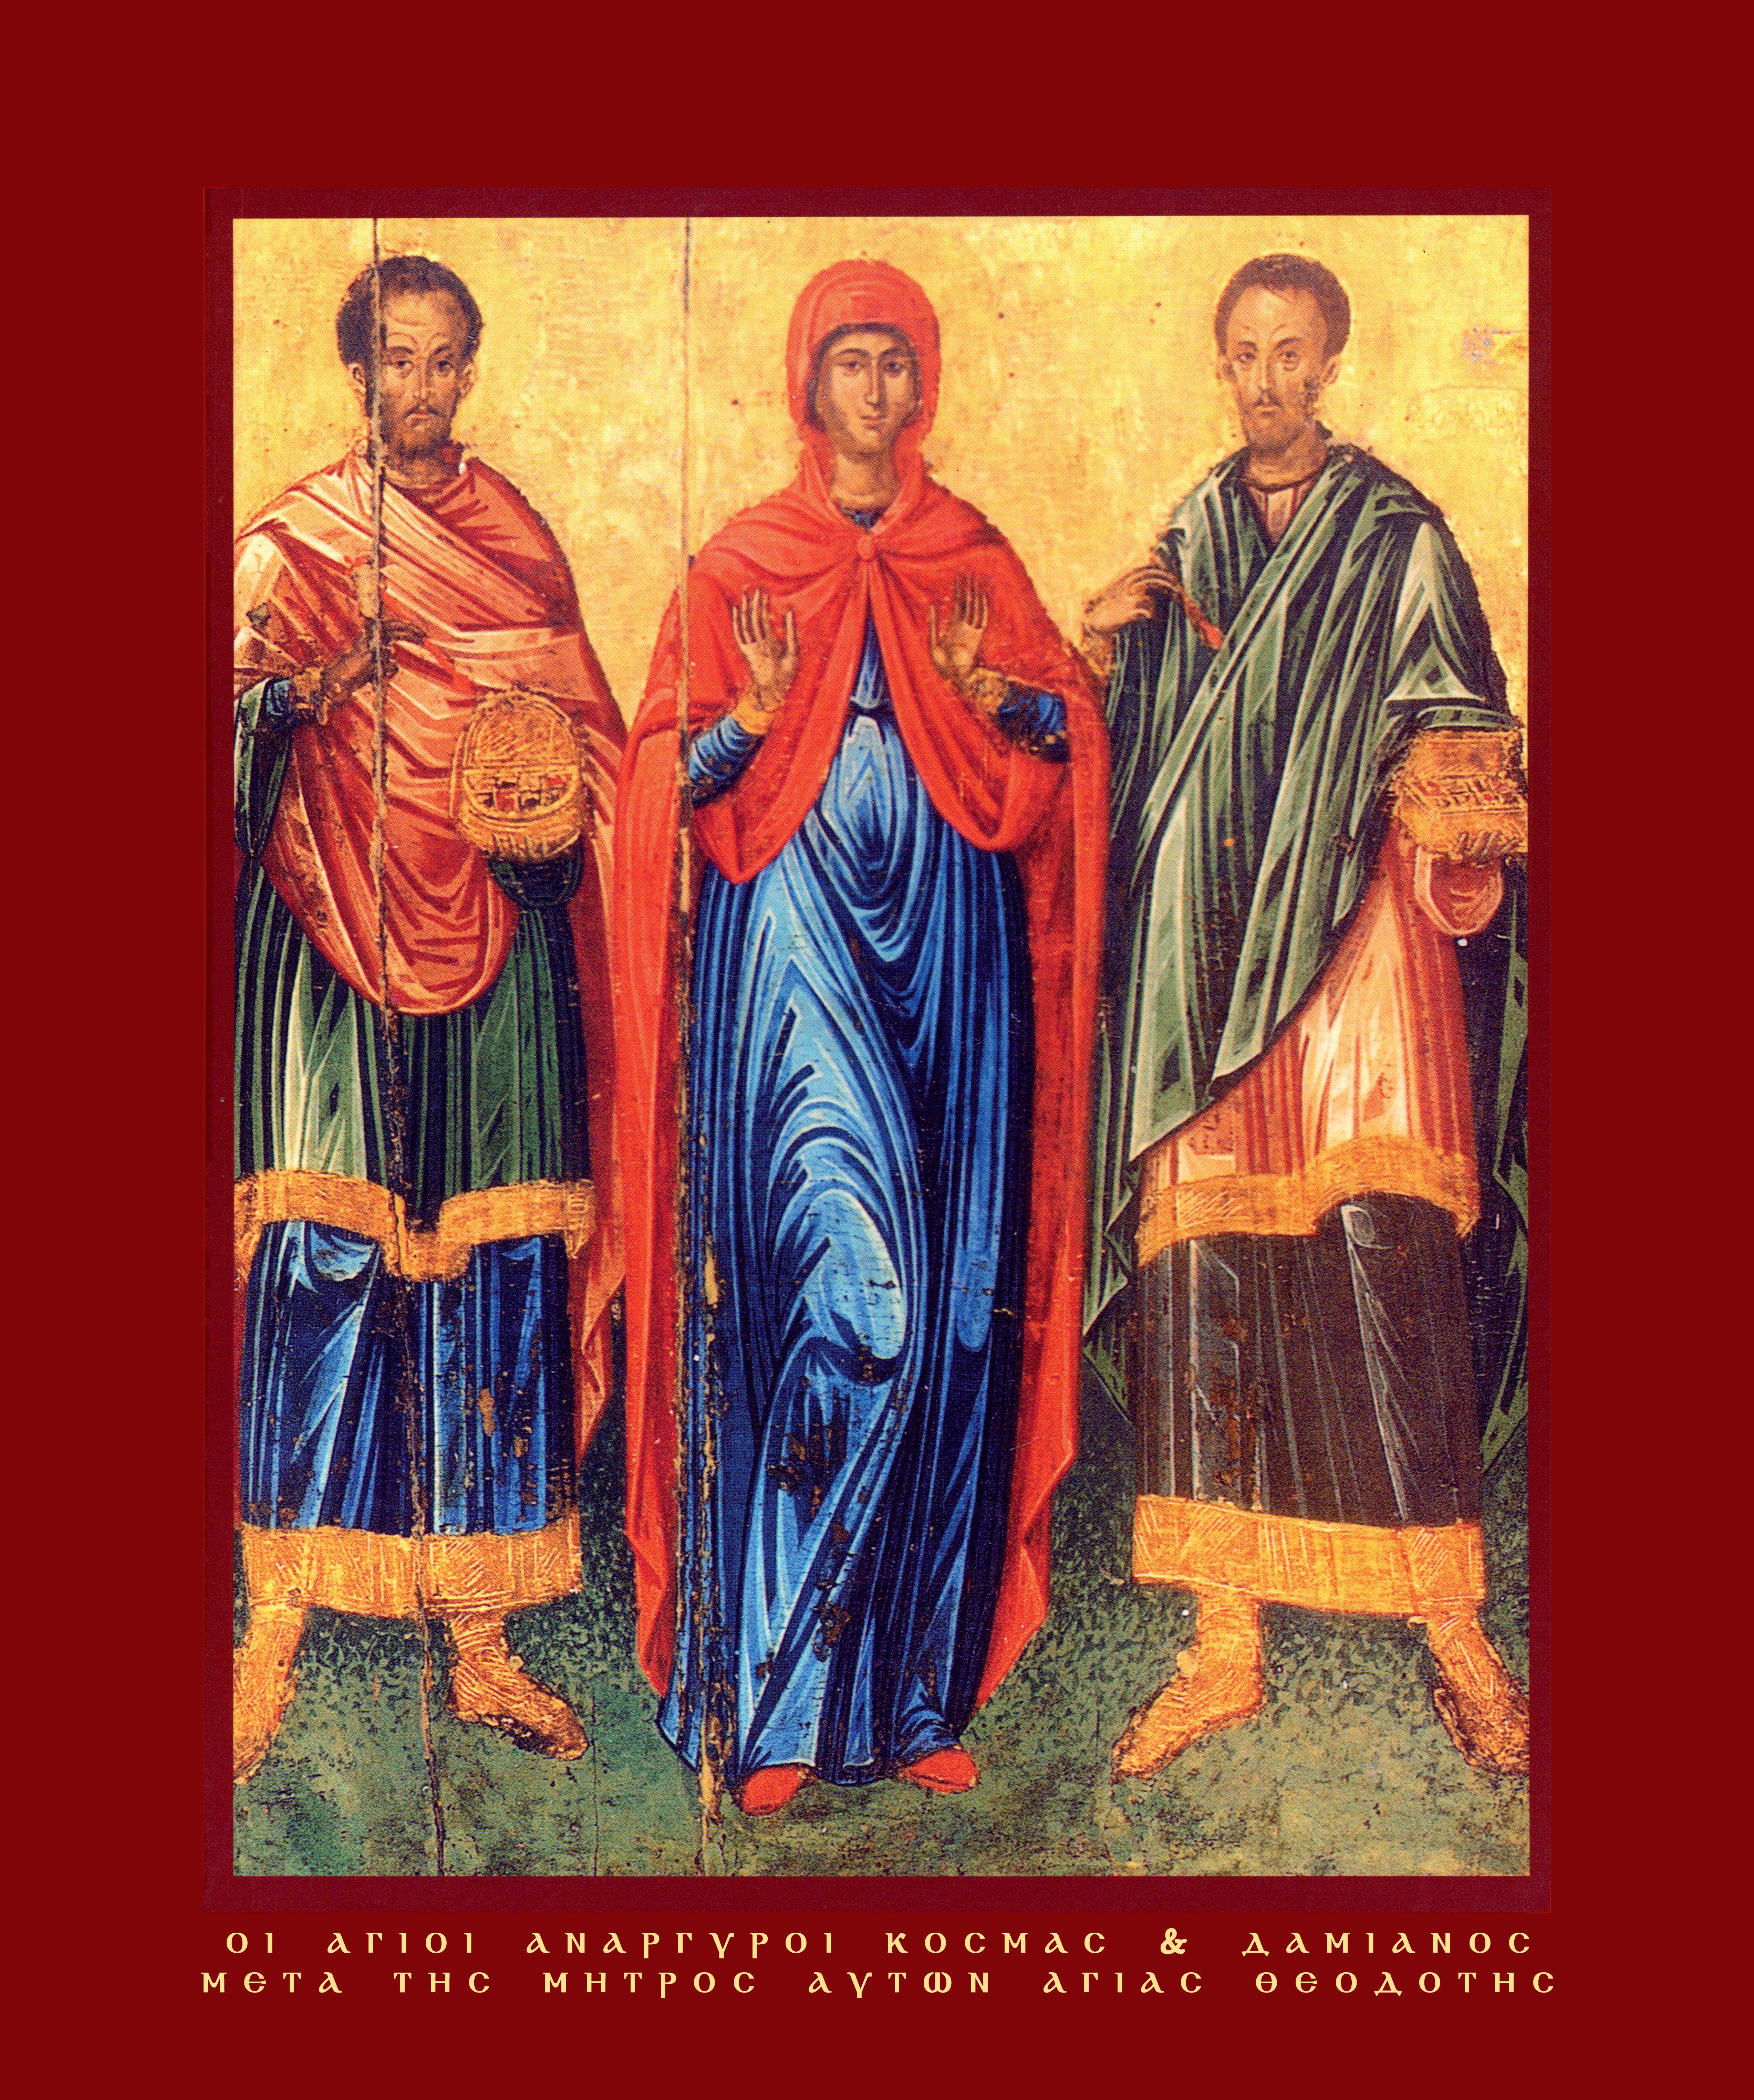 Οι Άγιοι Ανάργυροι Κοσμάς και Δαμιανός, μετά της μητρός αυτών Αγίας Θεοδότης